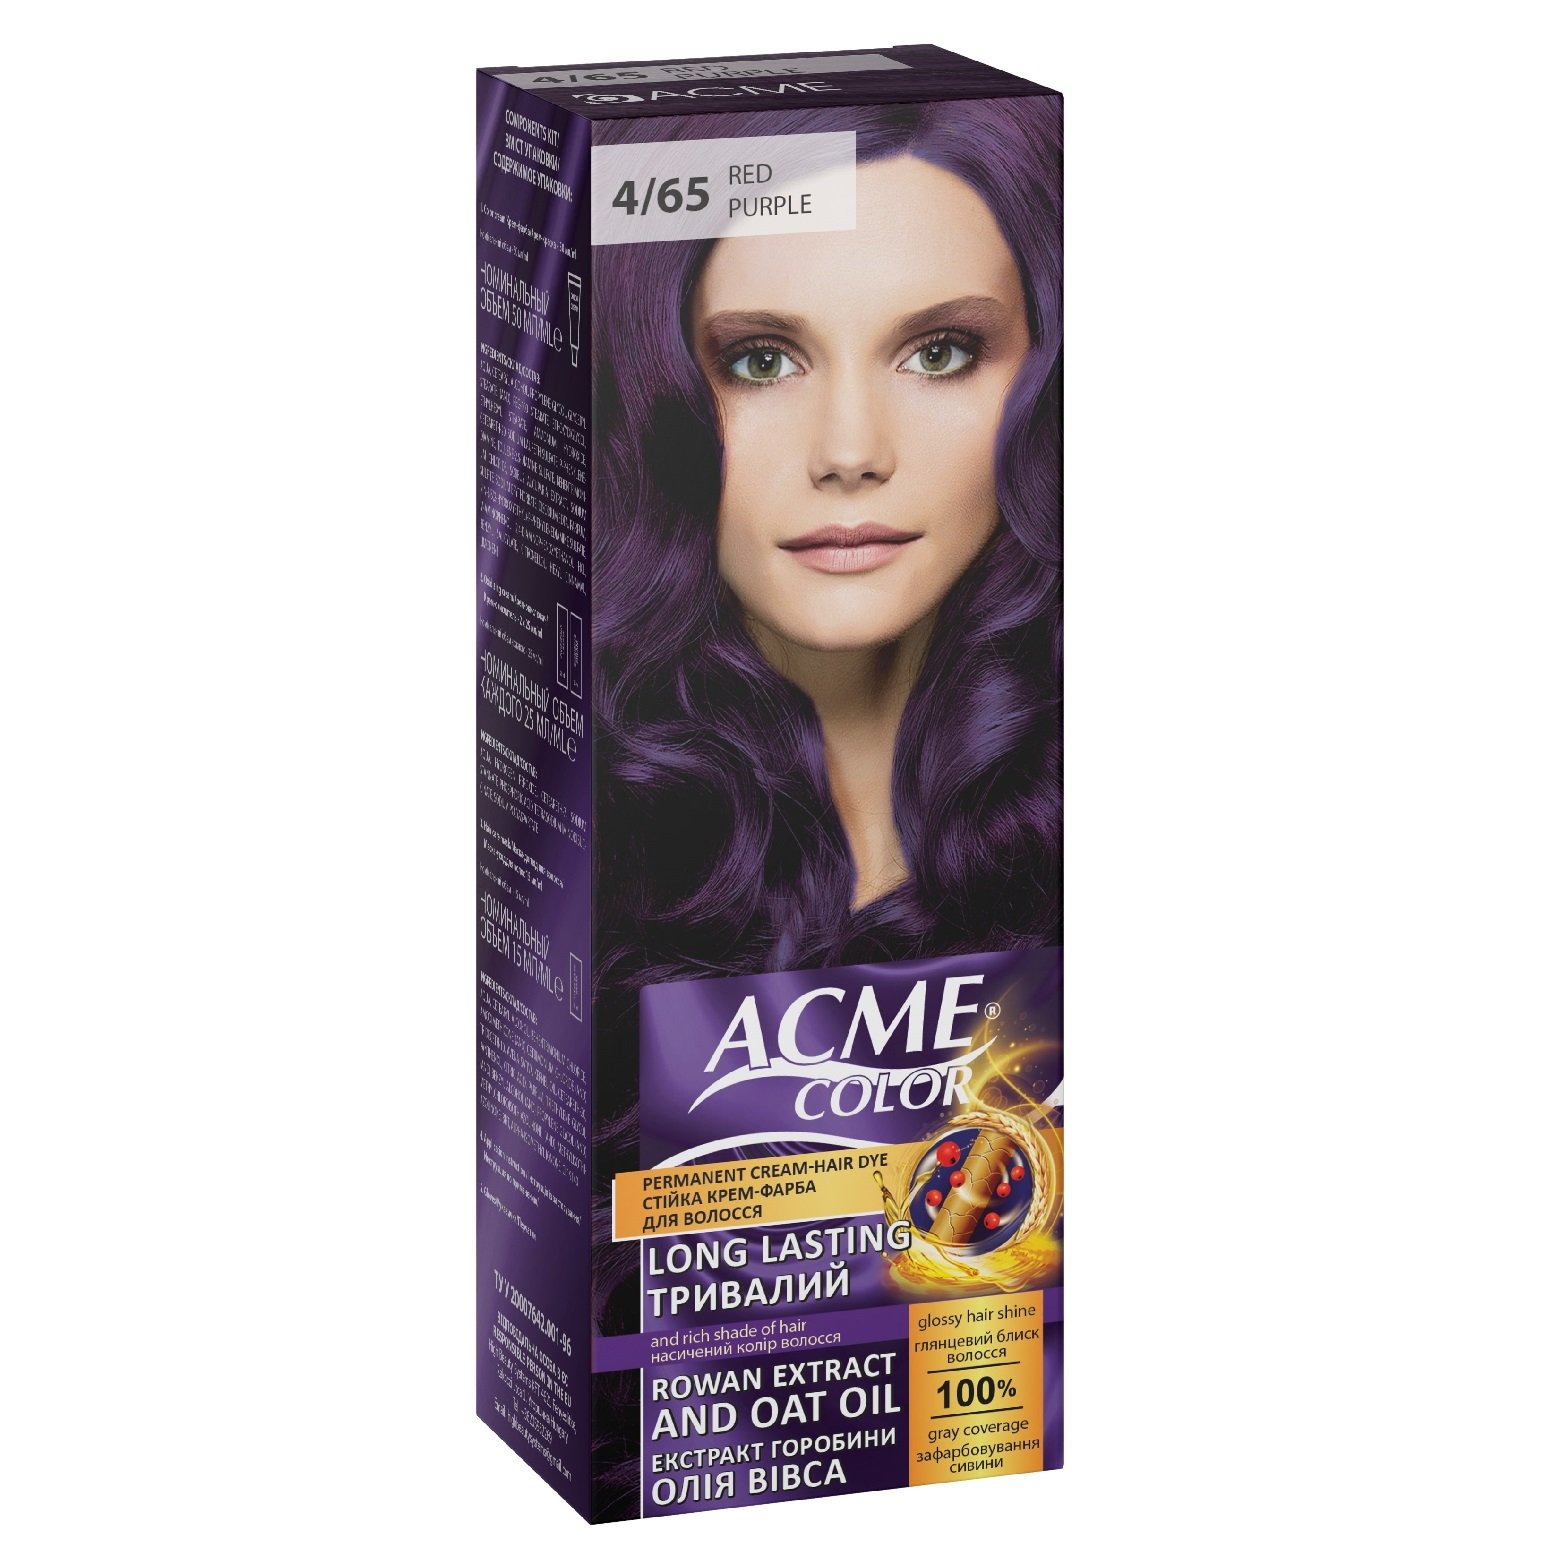 Крем-фарба для волосся Acme Color EXP, відтінок 4/65 (Червоно-фіолетовий), 115 мл - фото 1